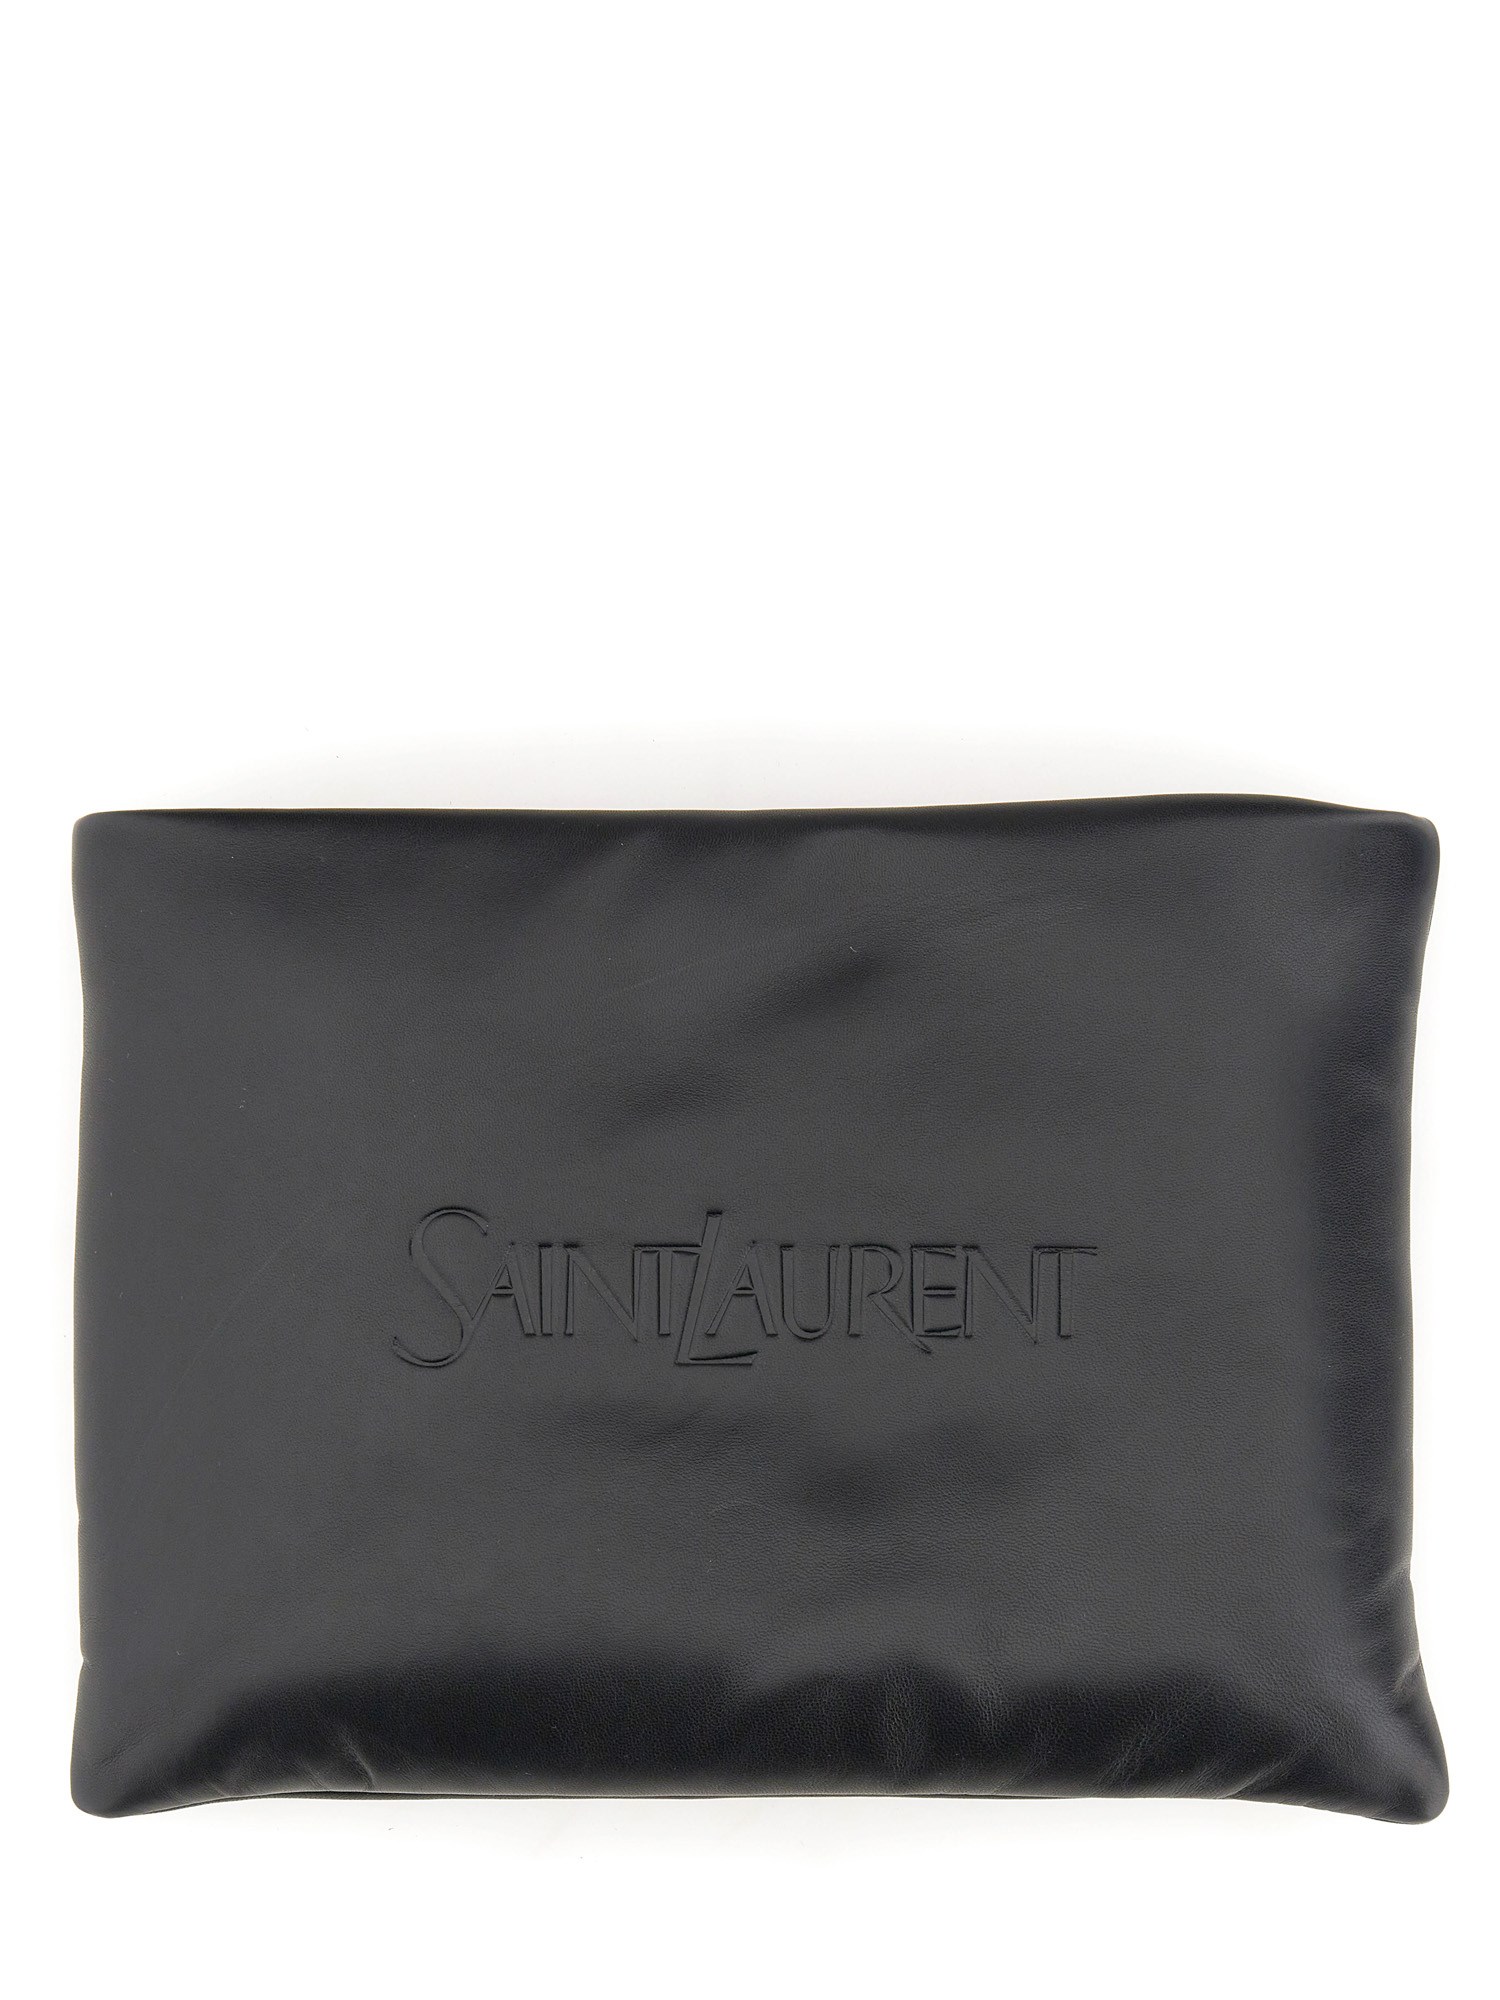 Saint Laurent saint laurent large padded clutch bag with logo